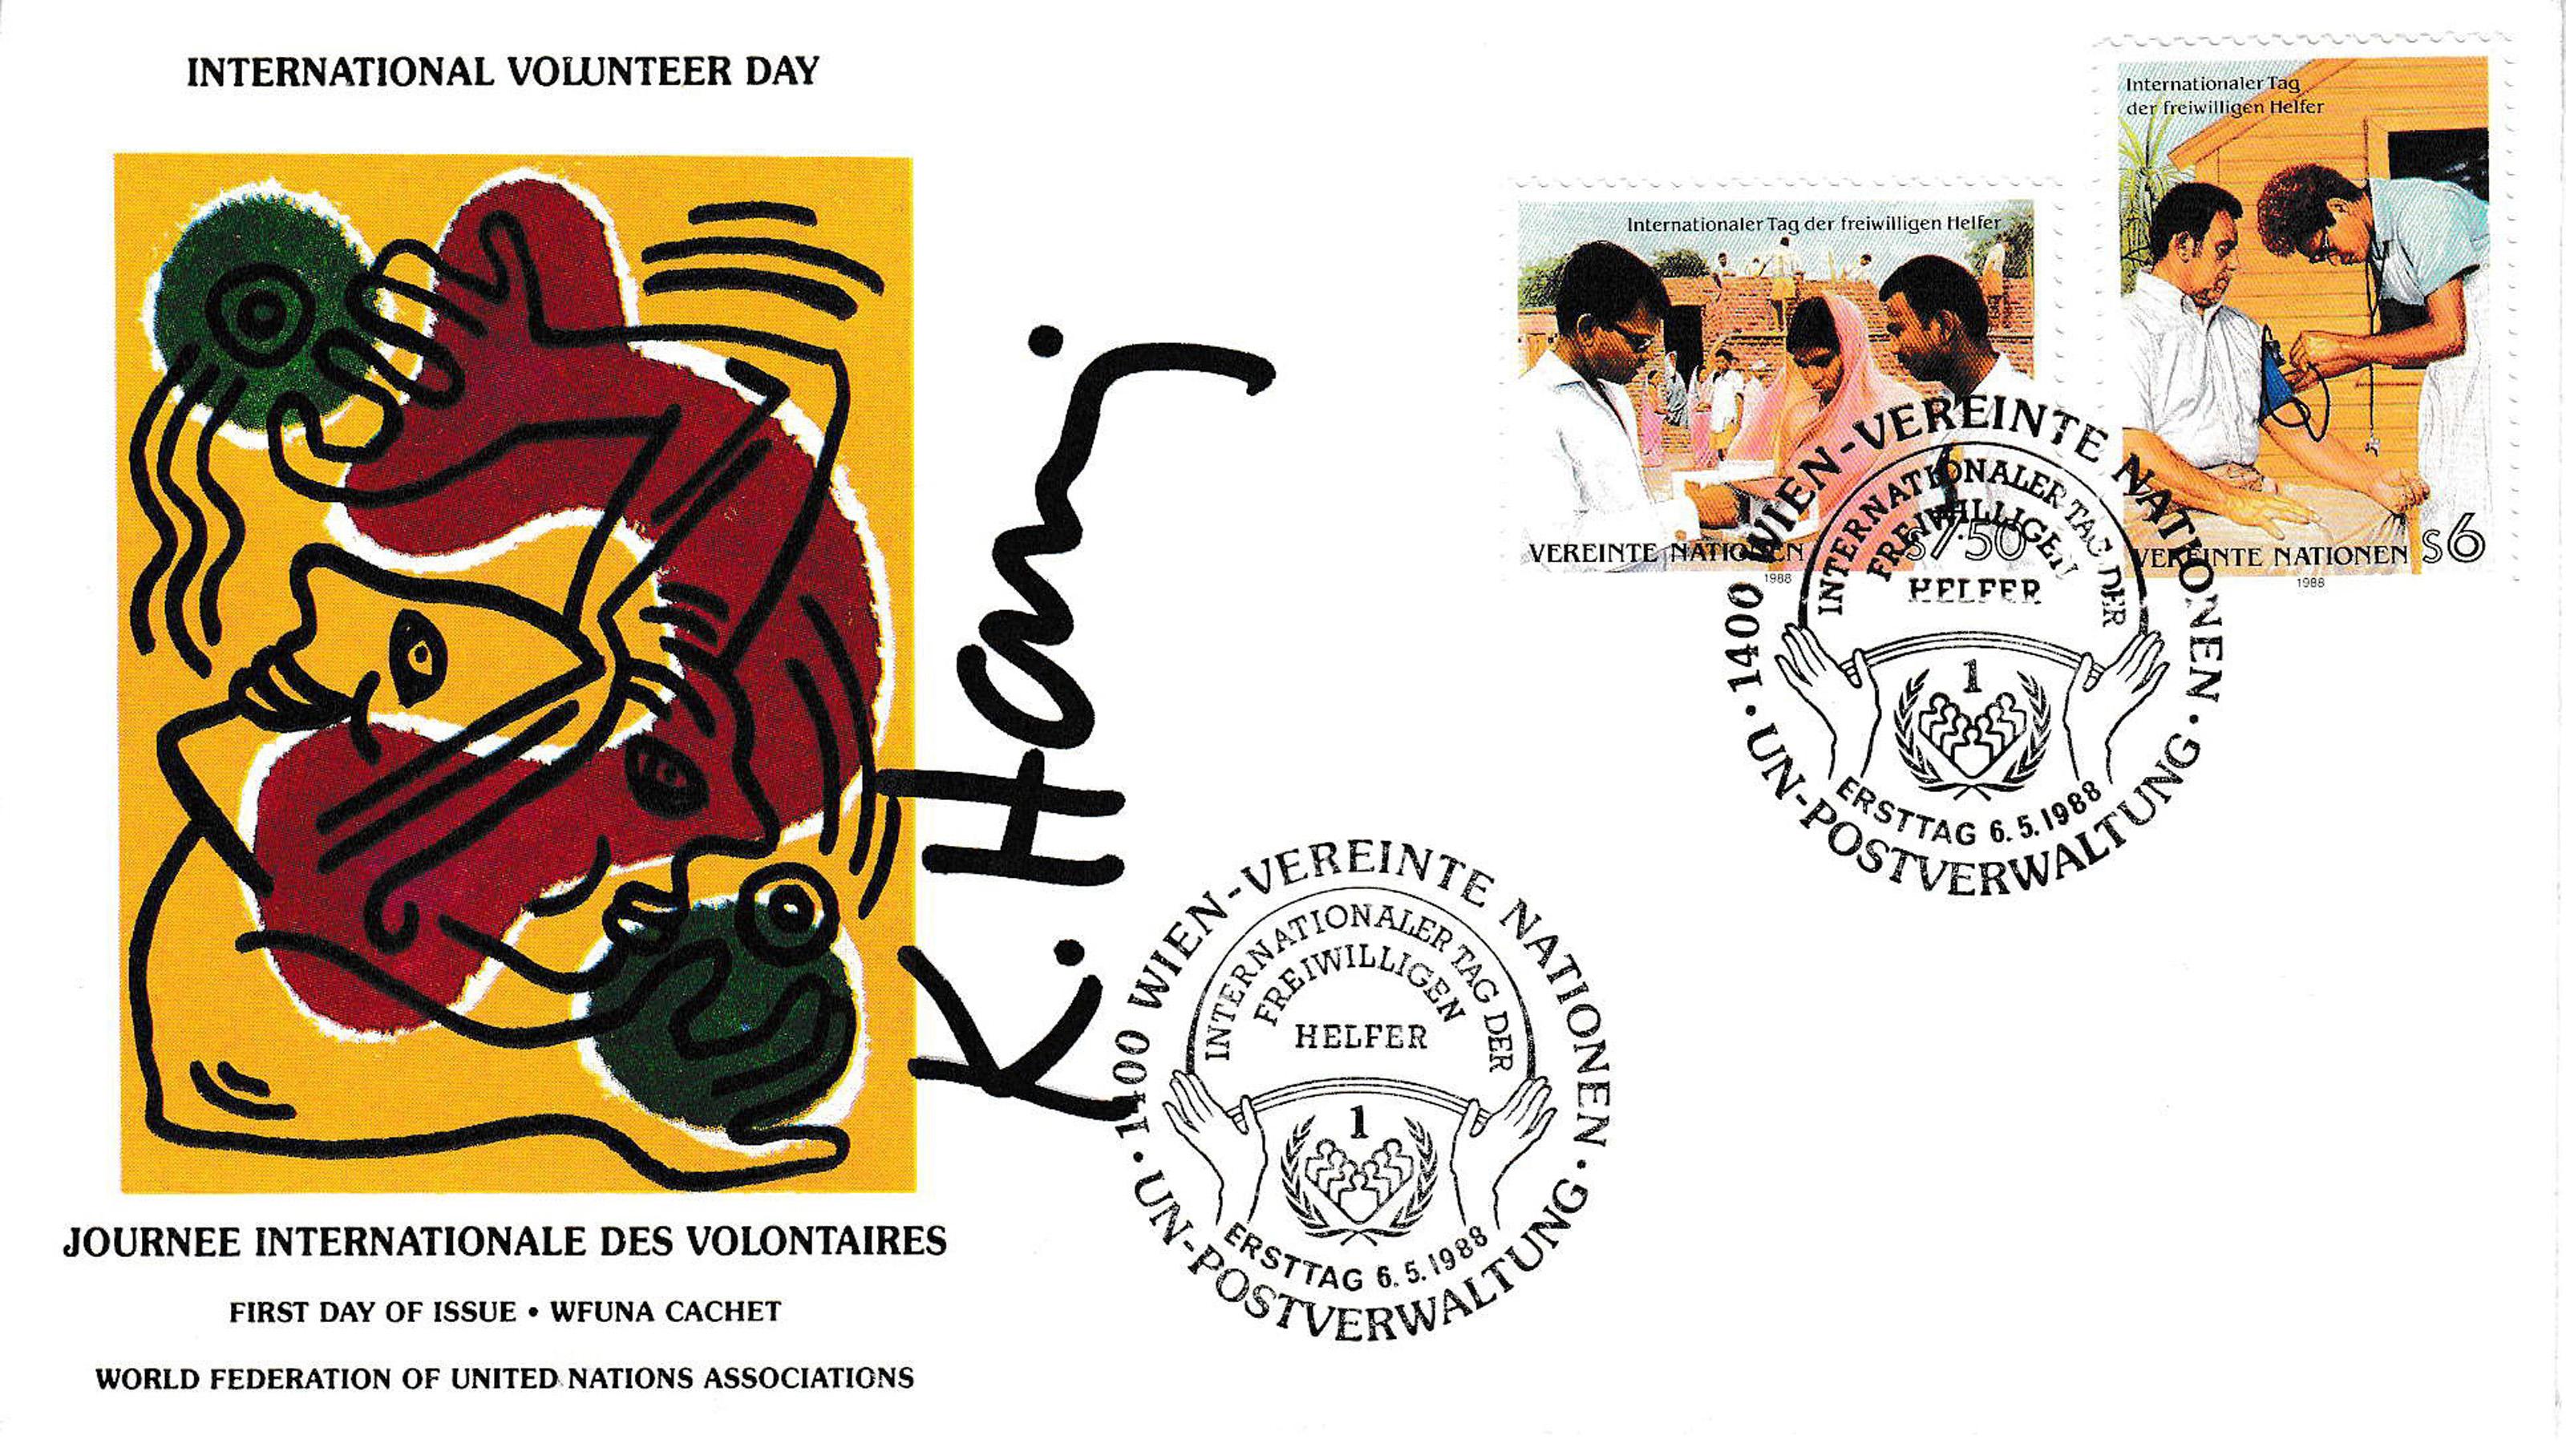 Cette enveloppe a été produite dans le cadre de la "Journée internationale des volontaires", une cause des droits de l'homme créée par la Fédération mondiale des Nations unies. Cet envoi comprend des timbres, le copyright imprimé de l'artiste "K.